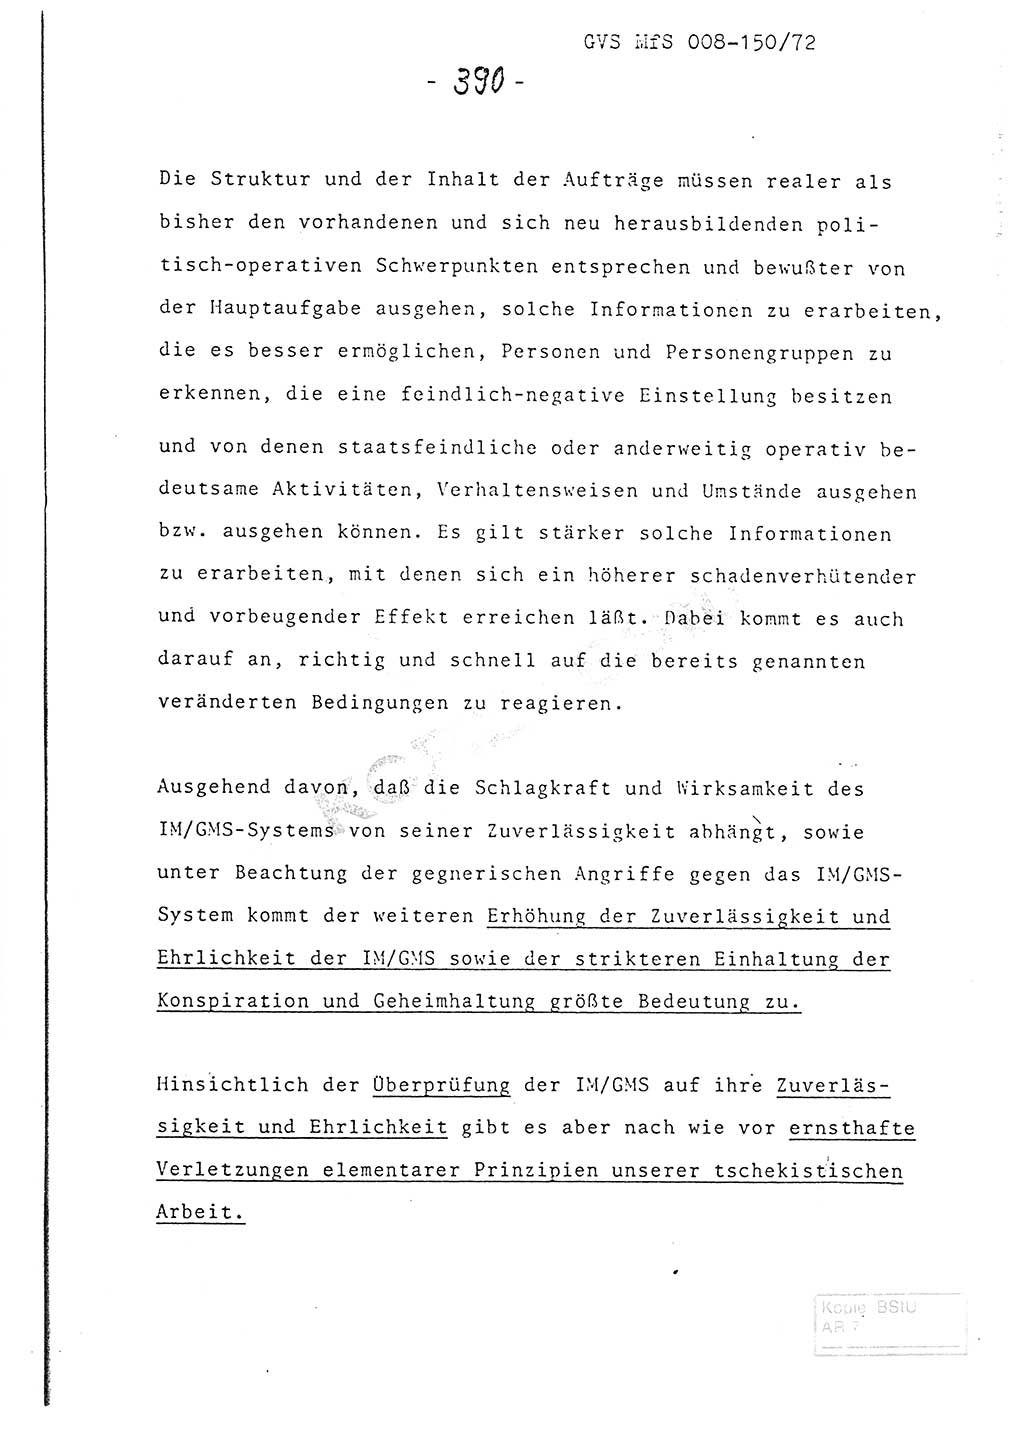 Referat (Entwurf) des Genossen Minister (Generaloberst Erich Mielke) auf der Dienstkonferenz 1972, Ministerium für Staatssicherheit (MfS) [Deutsche Demokratische Republik (DDR)], Der Minister, Geheime Verschlußsache (GVS) 008-150/72, Berlin 25.2.1972, Seite 390 (Ref. Entw. DK MfS DDR Min. GVS 008-150/72 1972, S. 390)